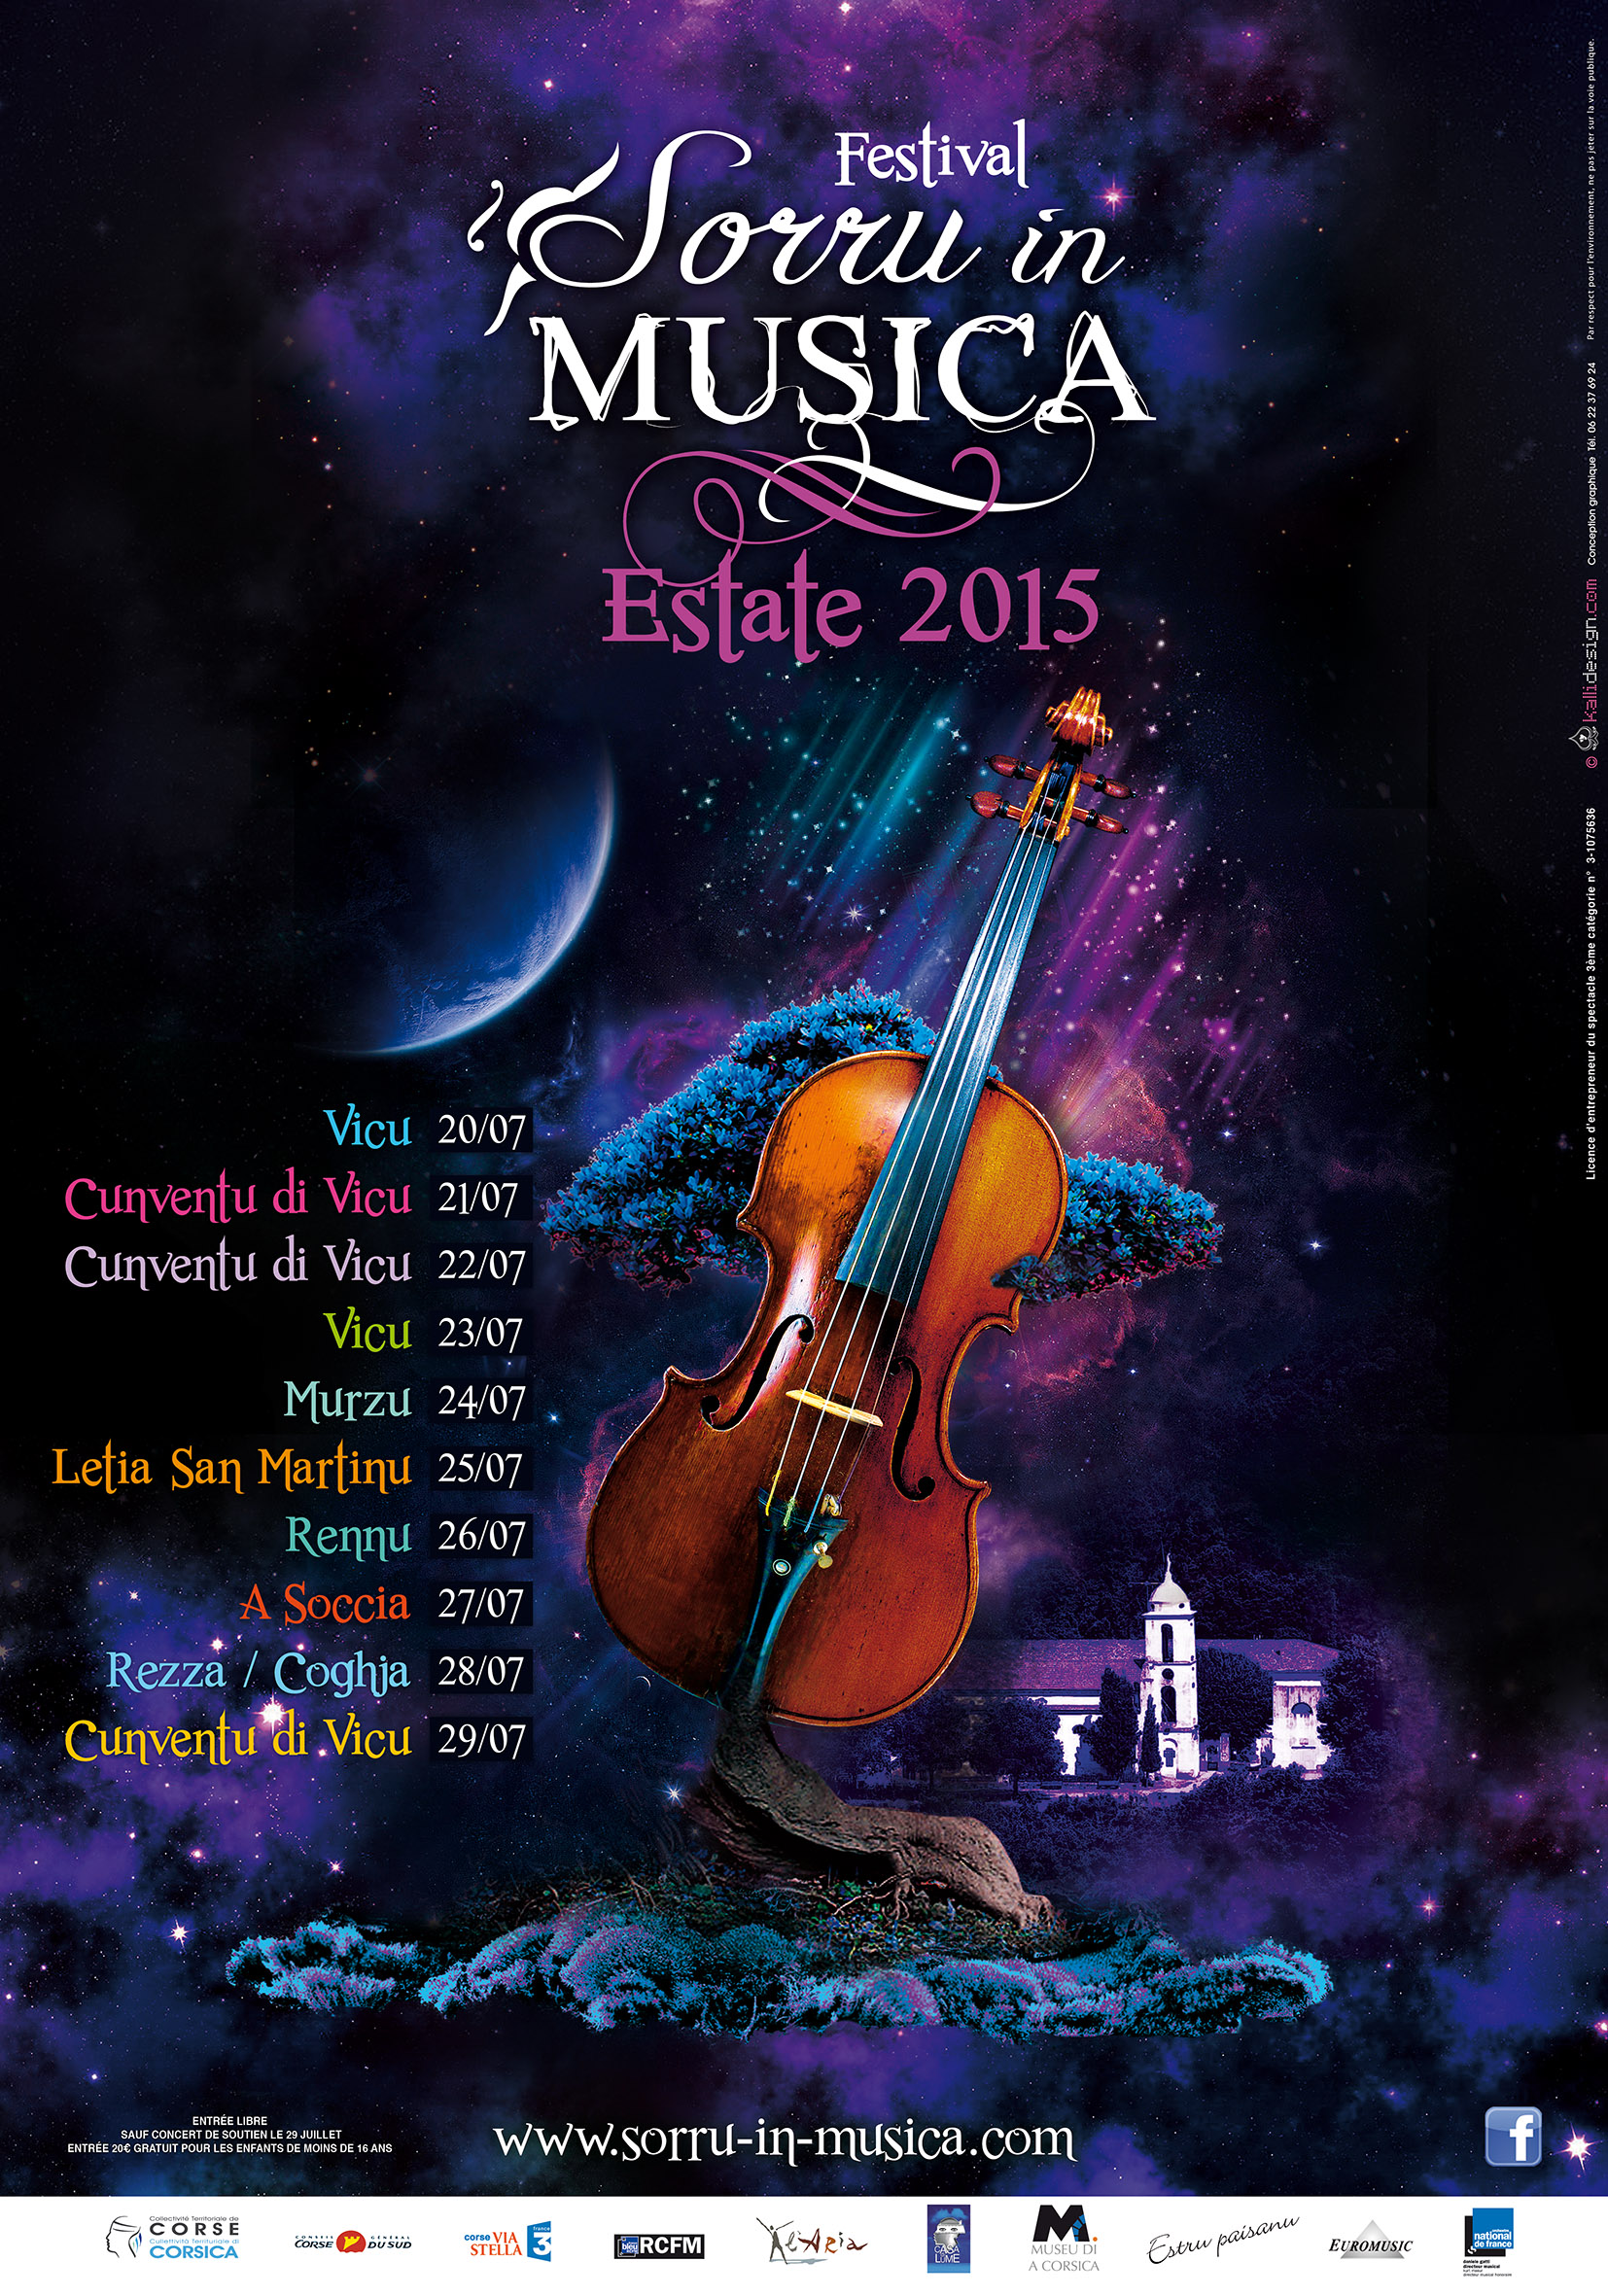 Sorru in Musica Estate 2015, un festival pour tous dès le 20 juillet